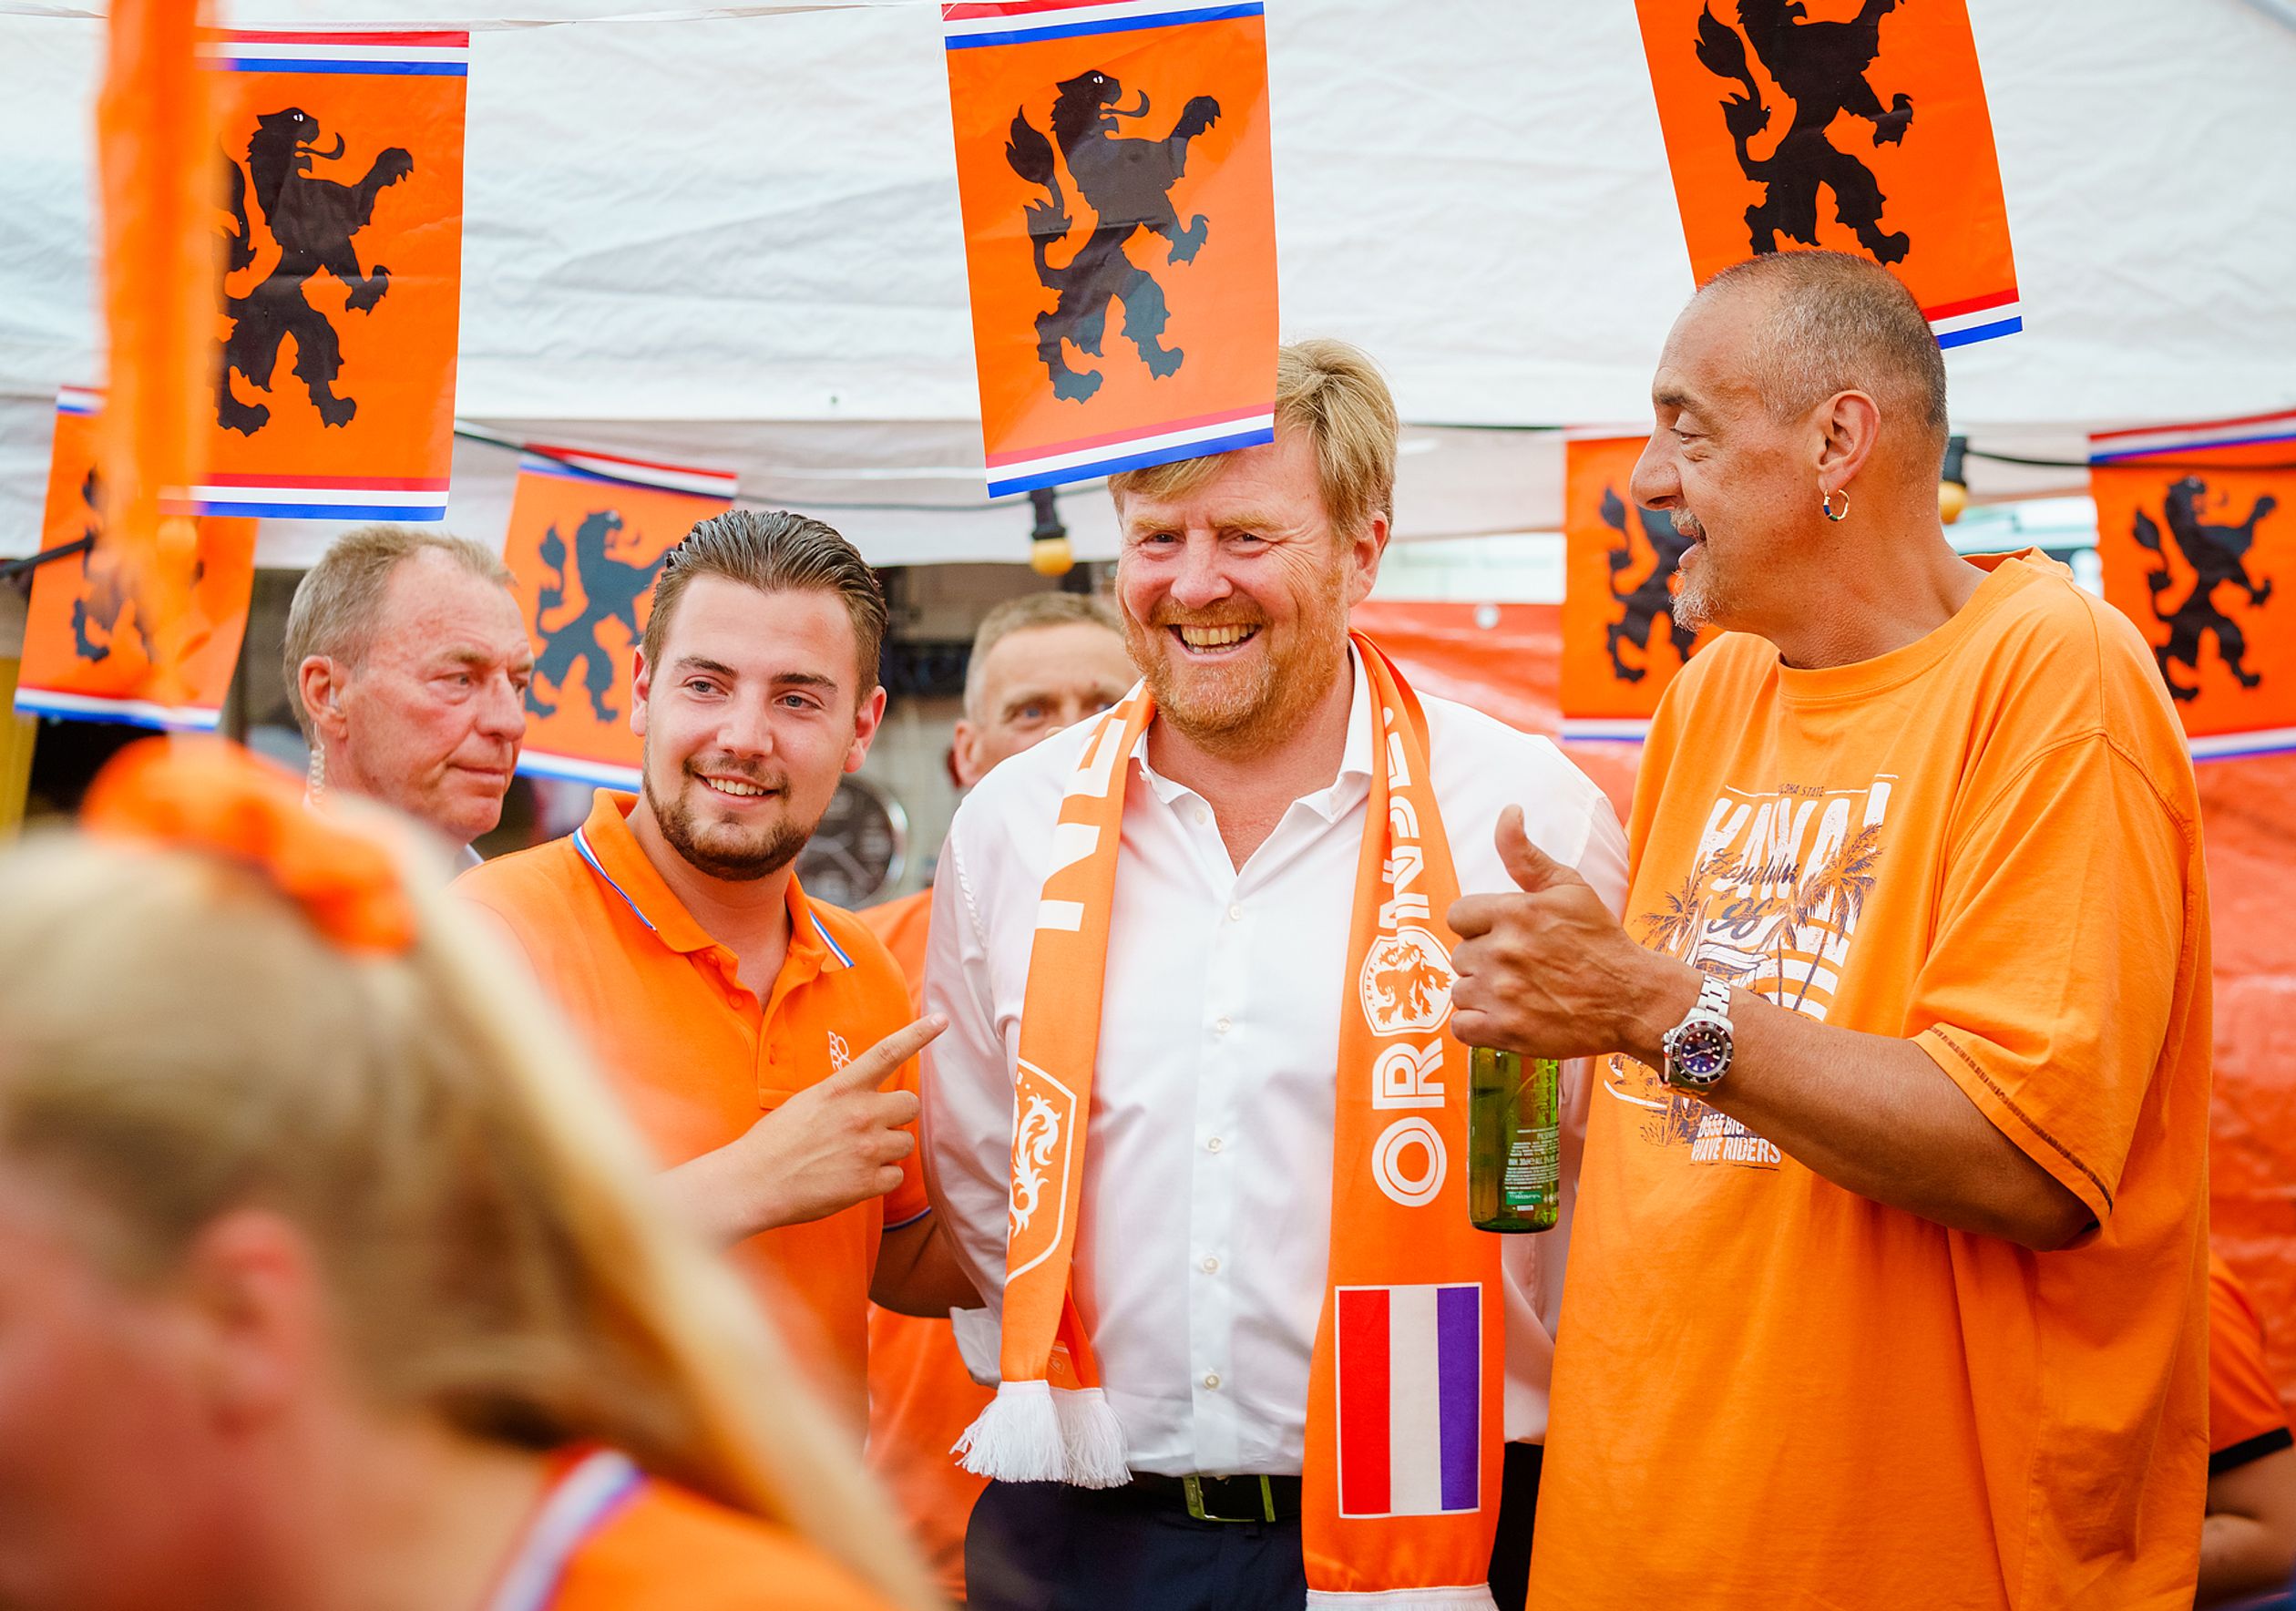 Koning bezoekt Mooiste Oranjestraat van Nederland